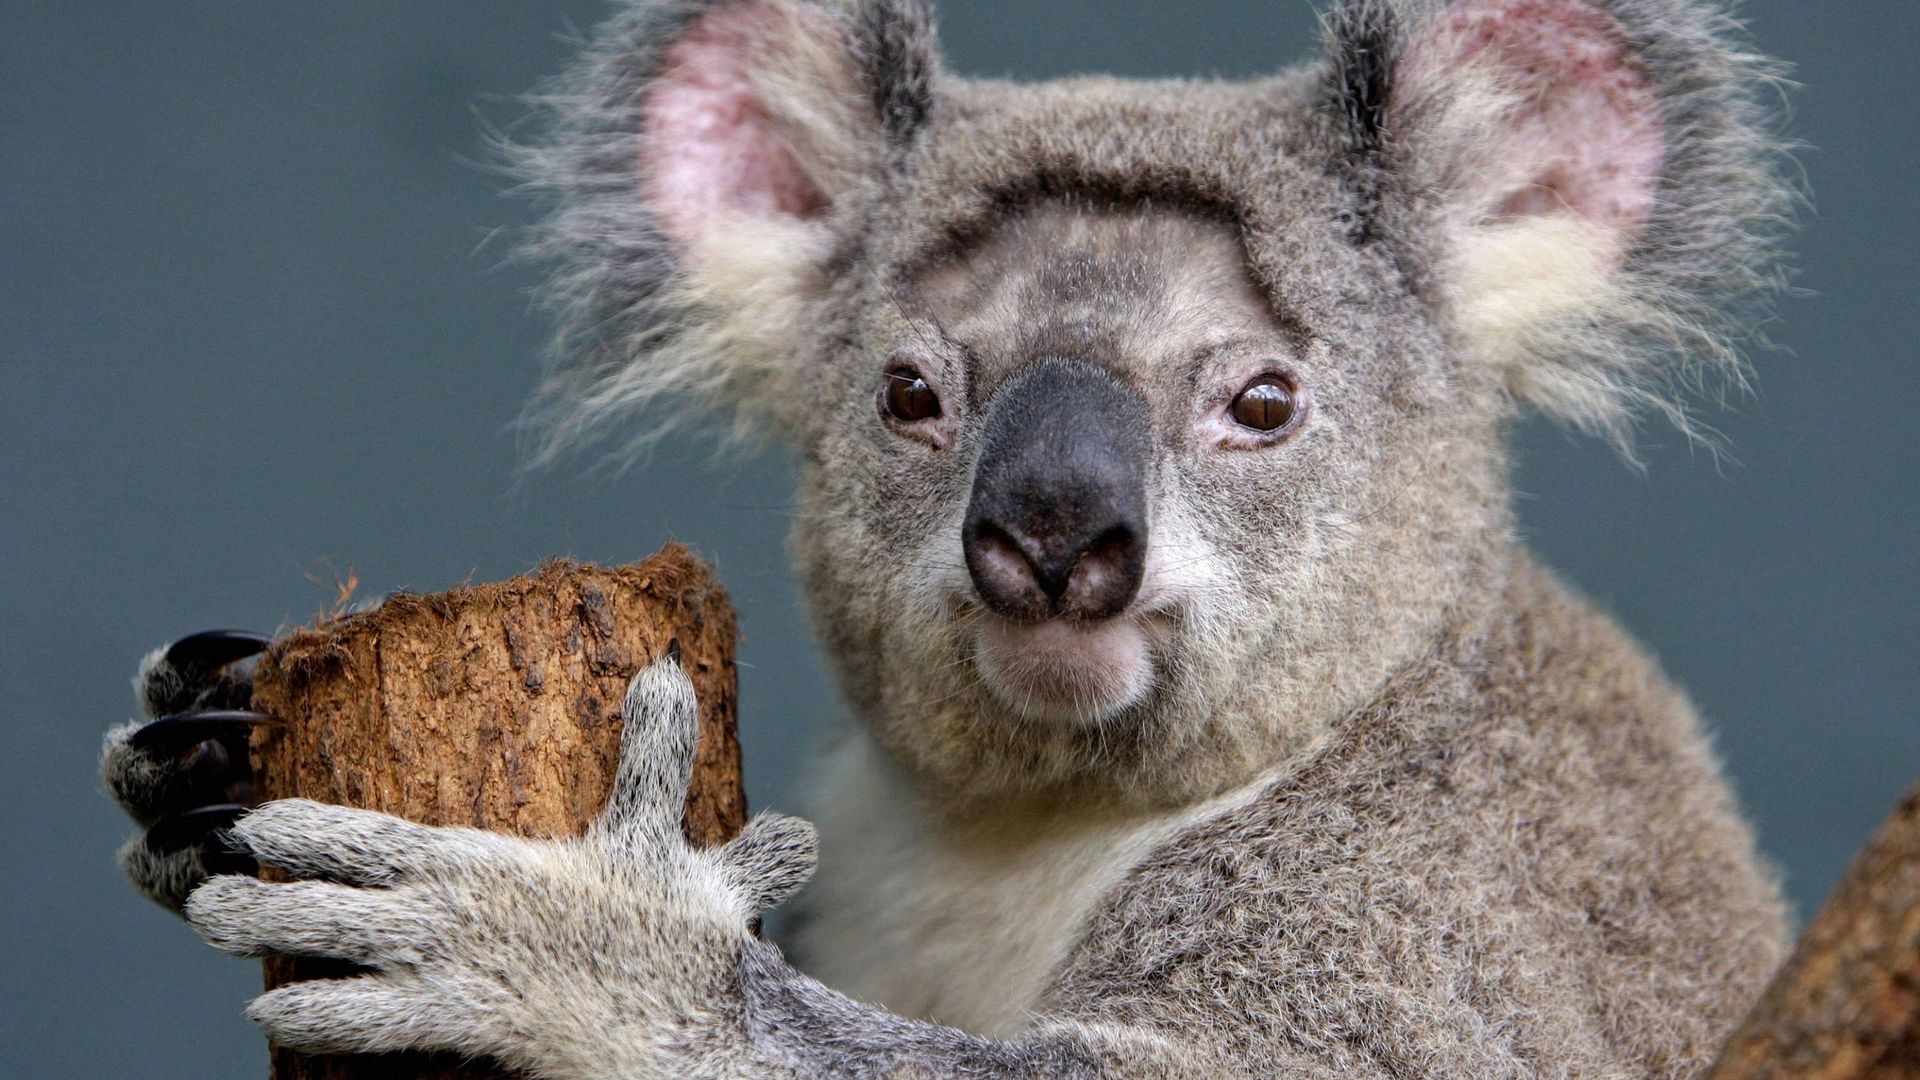 Australie: des chercheurs vont tester la "reconnaissance faciale" des koalas.